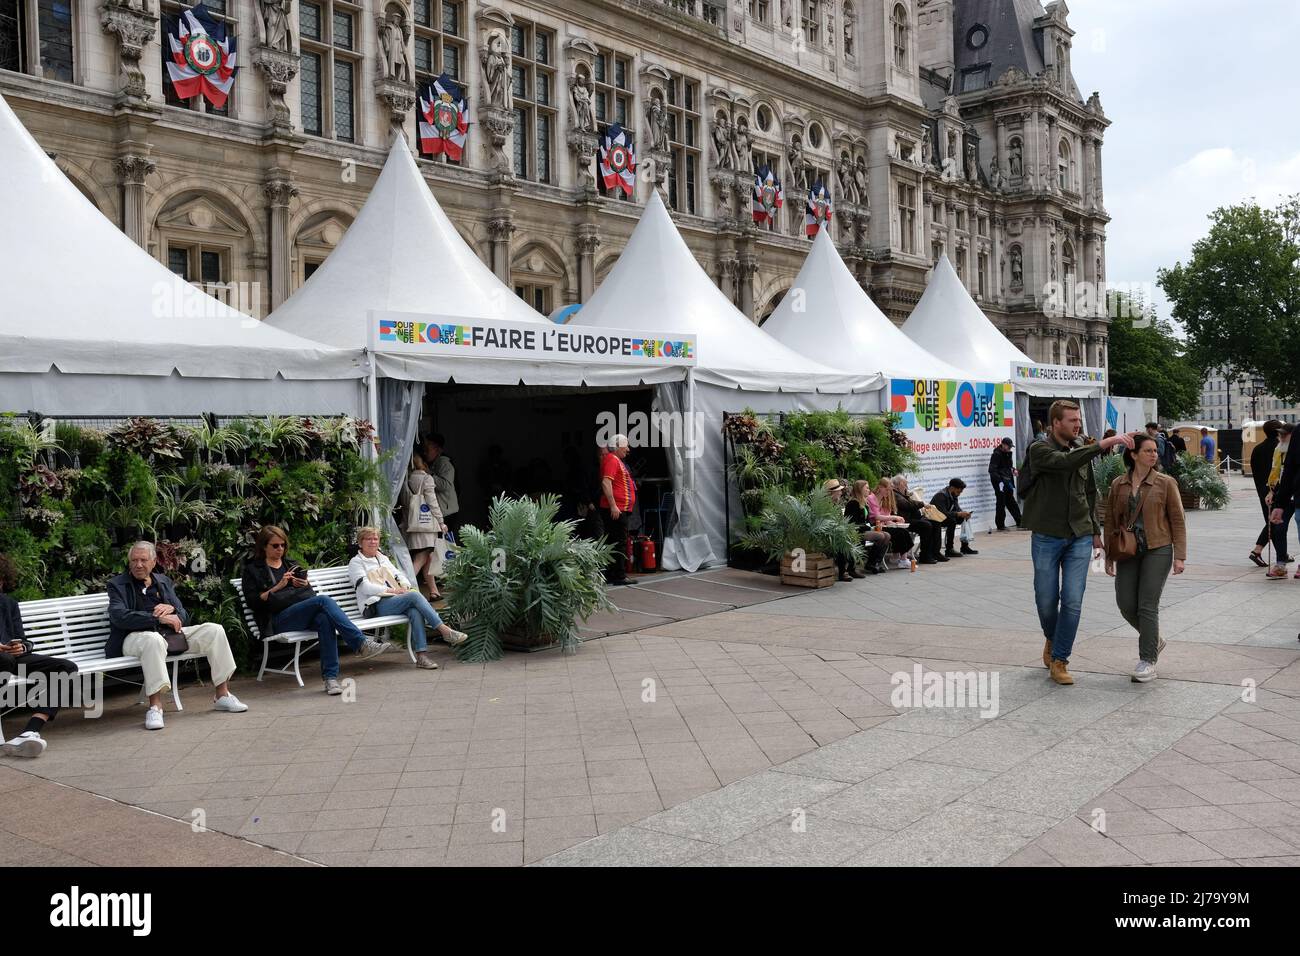 Sabato 7 maggio è stata organizzata una Giornata dell'Europa nella piazza di fronte al municipio di Parigi, con stand per ONG e una sala conferenze Foto Stock